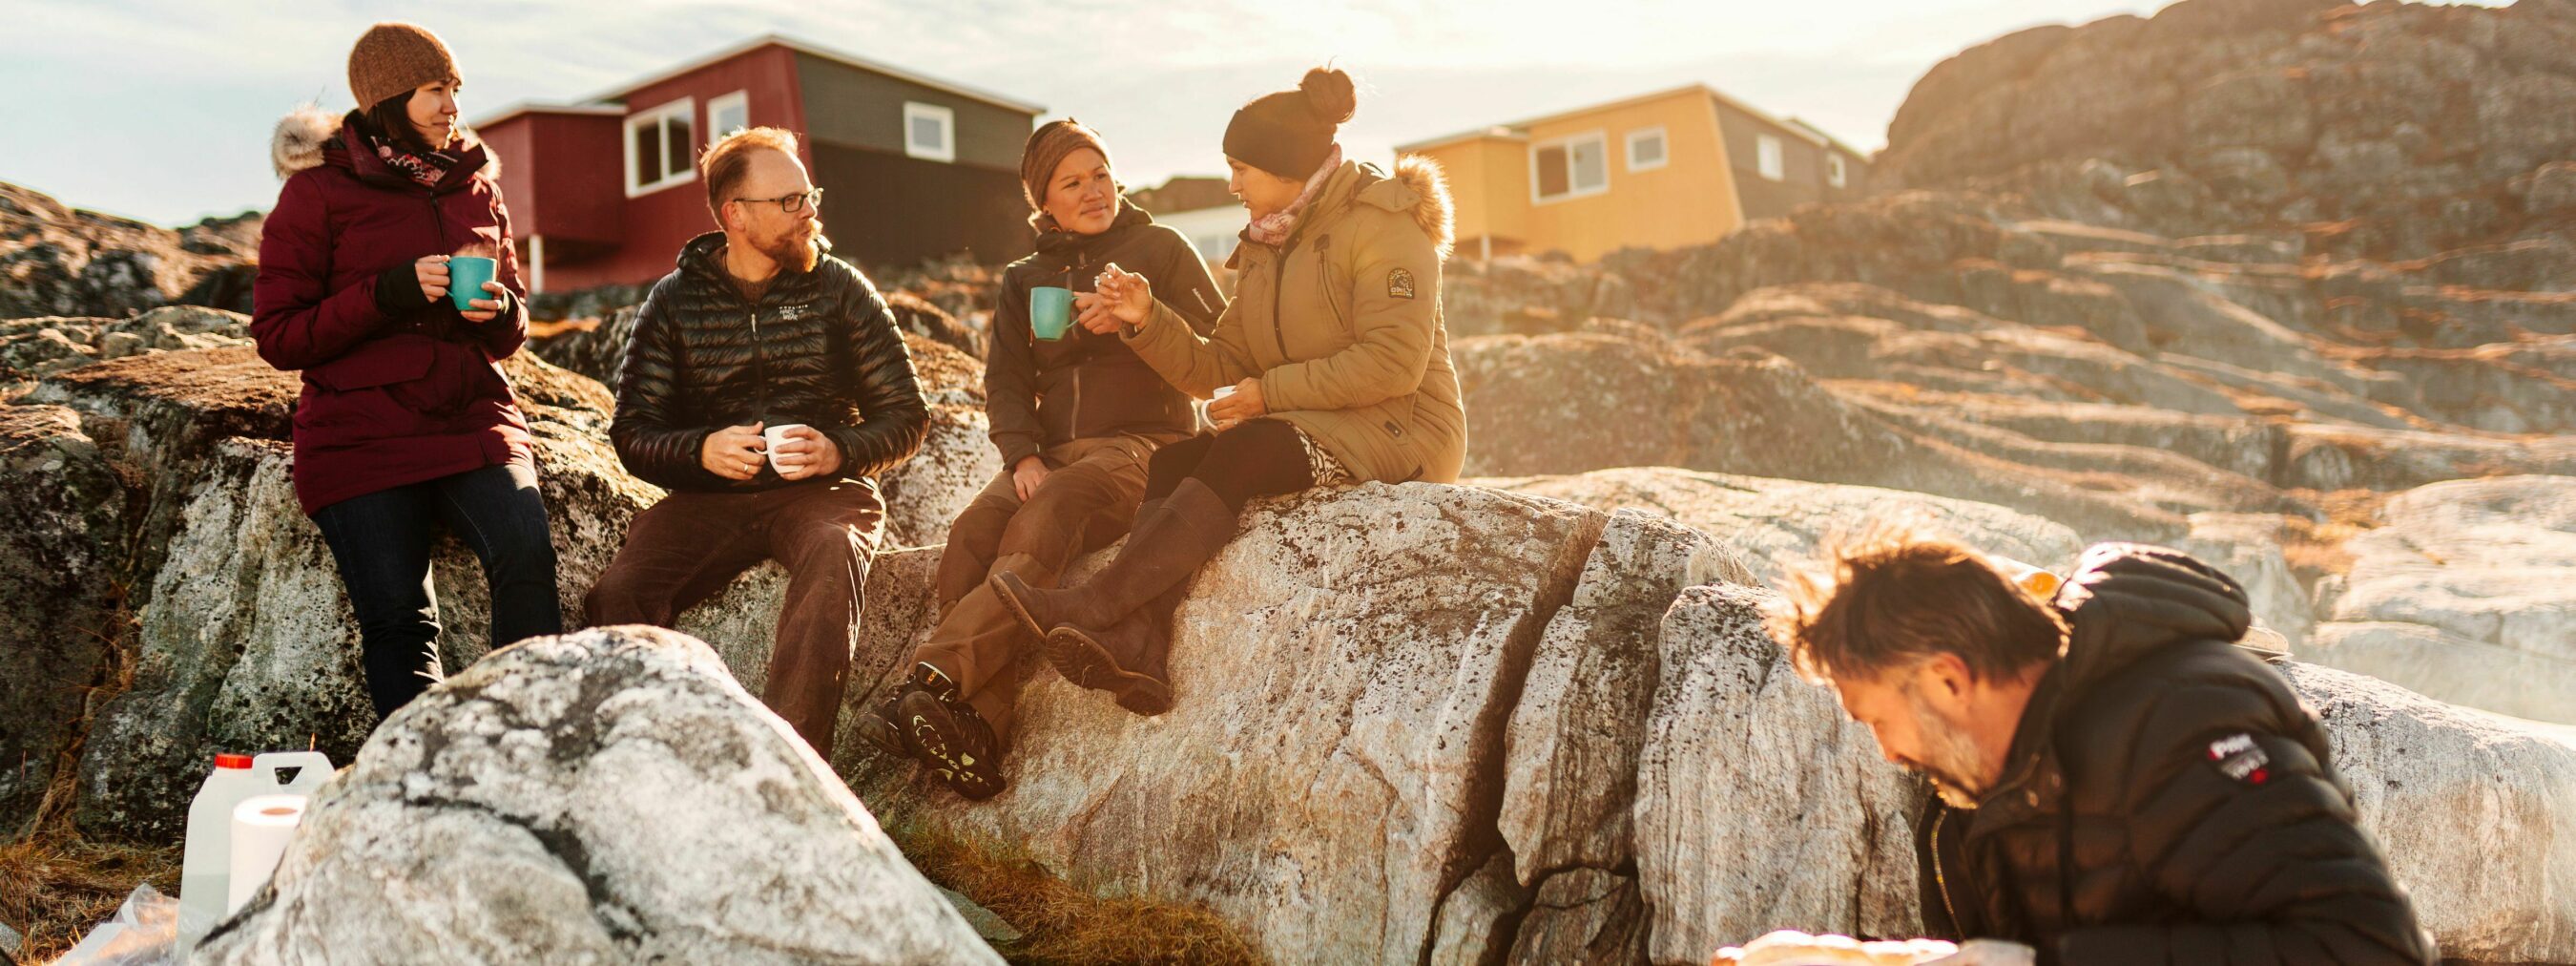 Nordgrönland: Picknik am Strand bei Inuk
Reisegruppe picknikt im Sonnenschein am felsigen Strand